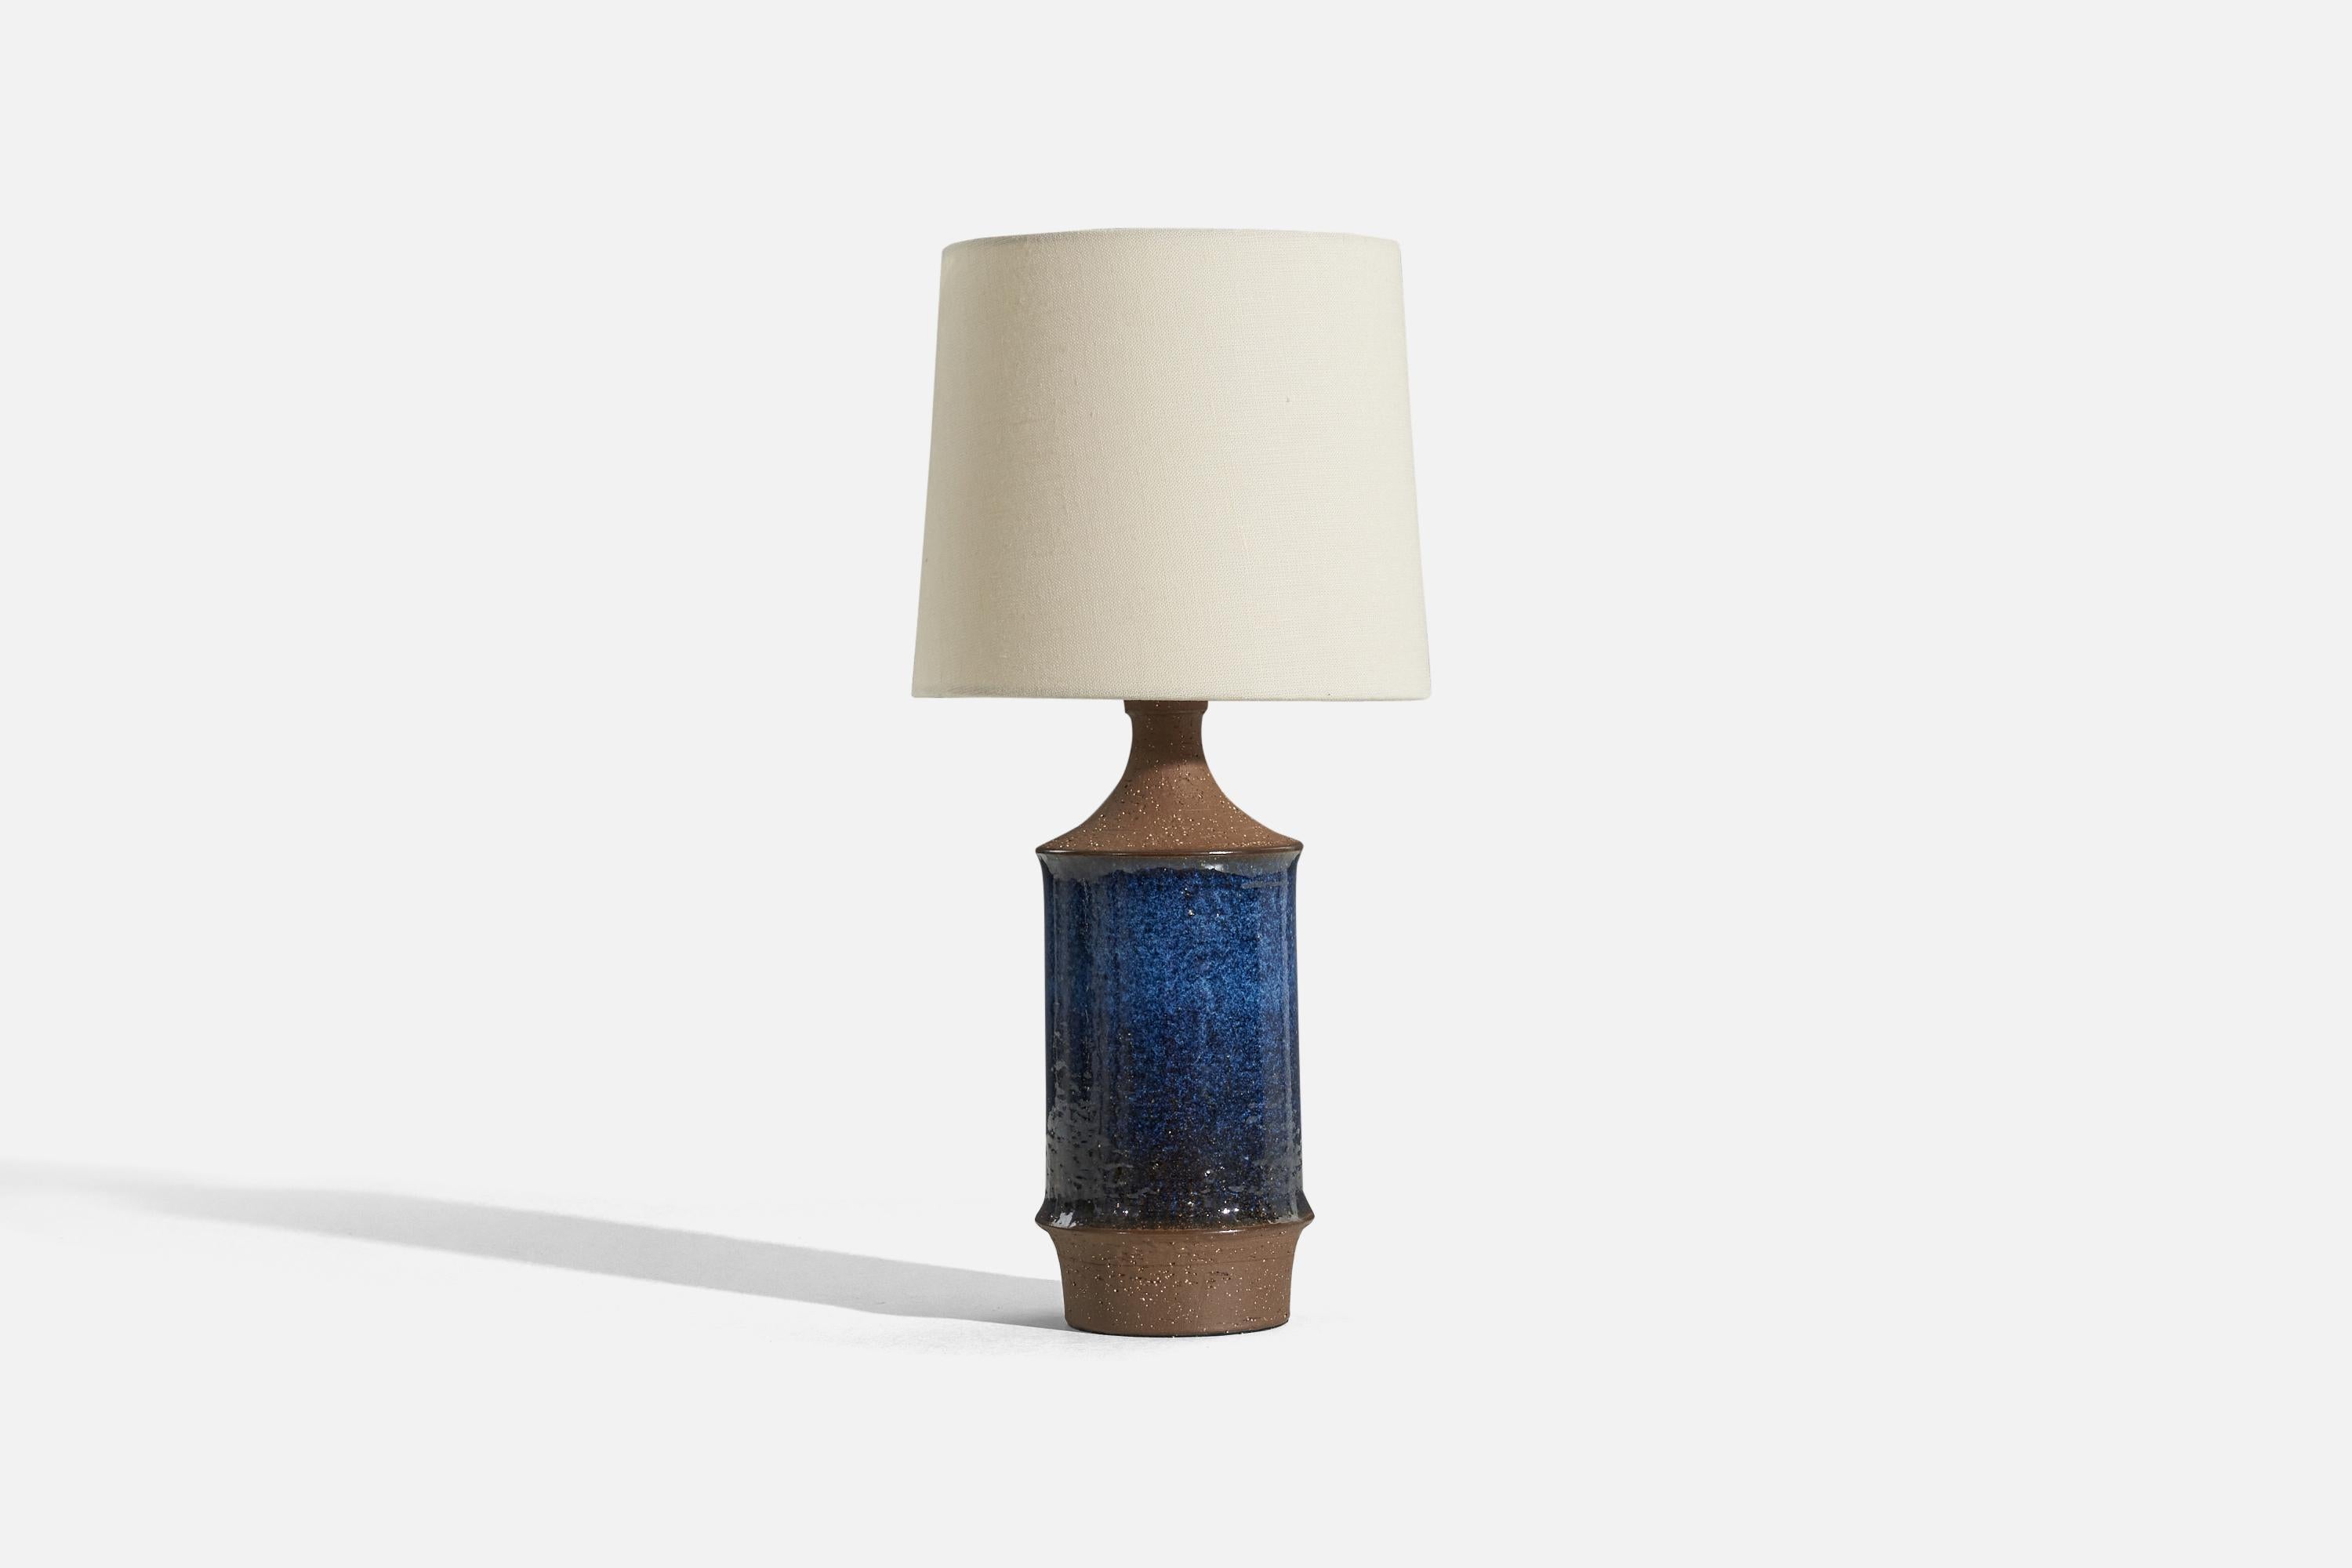 Lampe de table en grès émaillé bleu conçue et produite par Michael Andersen Keramik, Danemark, années 1960.

Vendu sans abat-jour. 
Dimensions de la lampe (pouces) : 12.6875 x 4,6875 x 4,6875 (H x L x P)
Dimensions de l'abat-jour (pouces) : 7 x 8 x